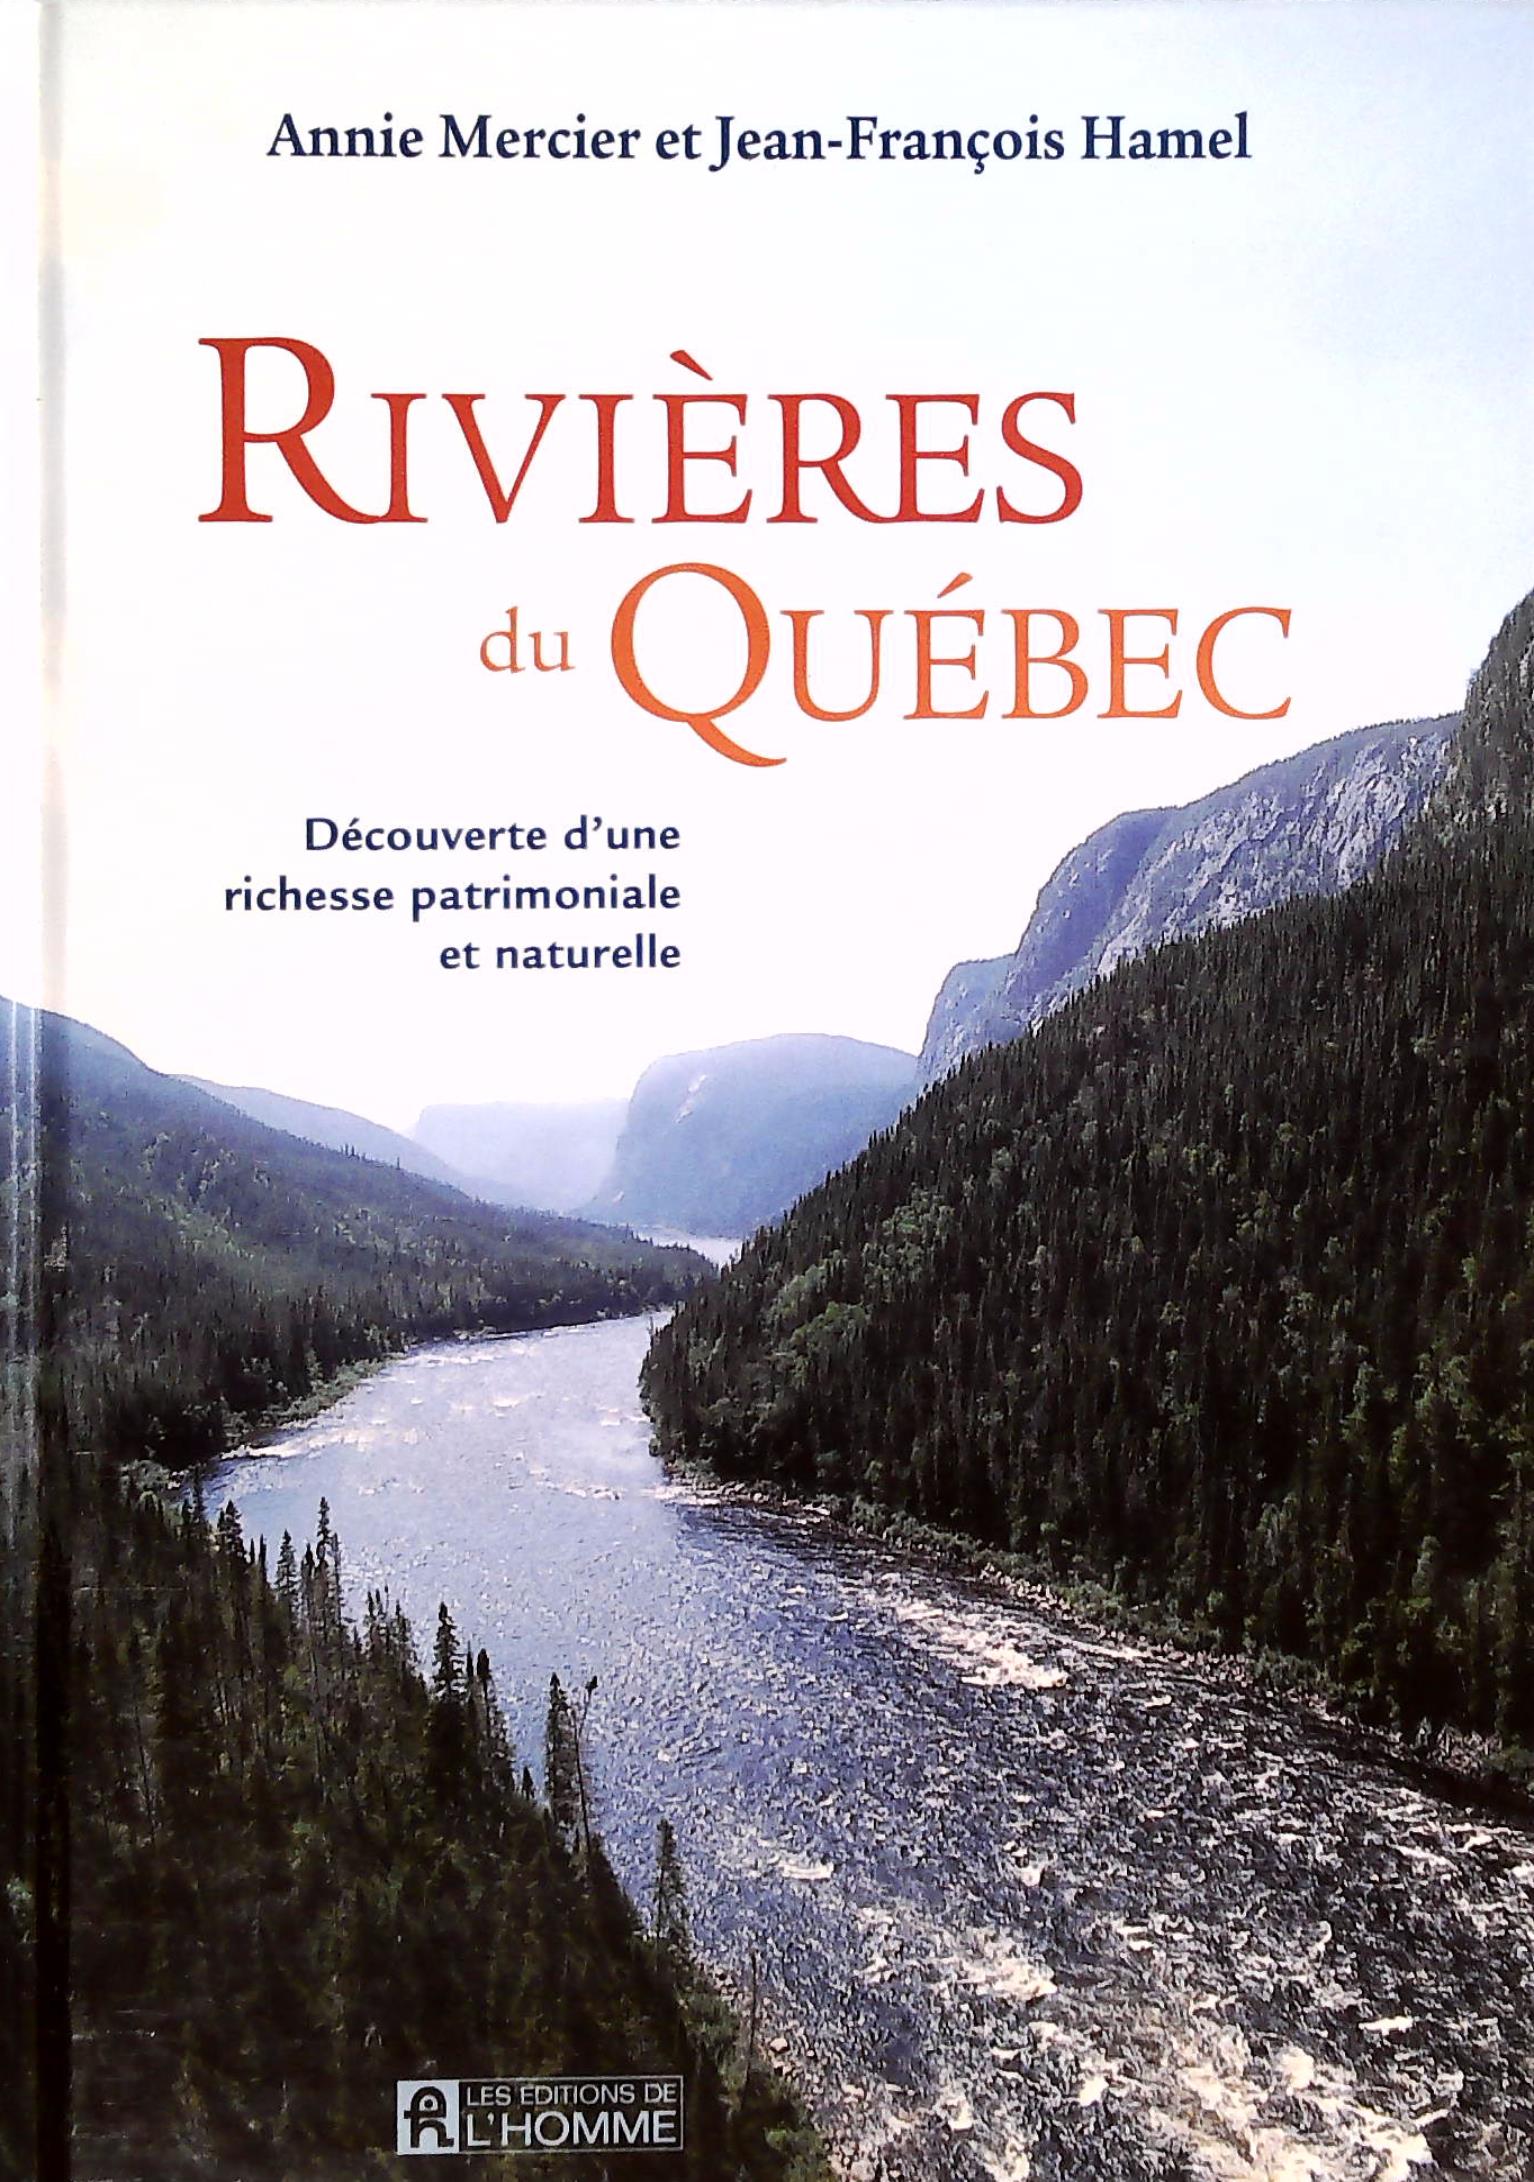 Livre ISBN 2761919661 Rivières du Québec : Découverte d'une richesse patrimoniale et naturelle (Annie Mercier)